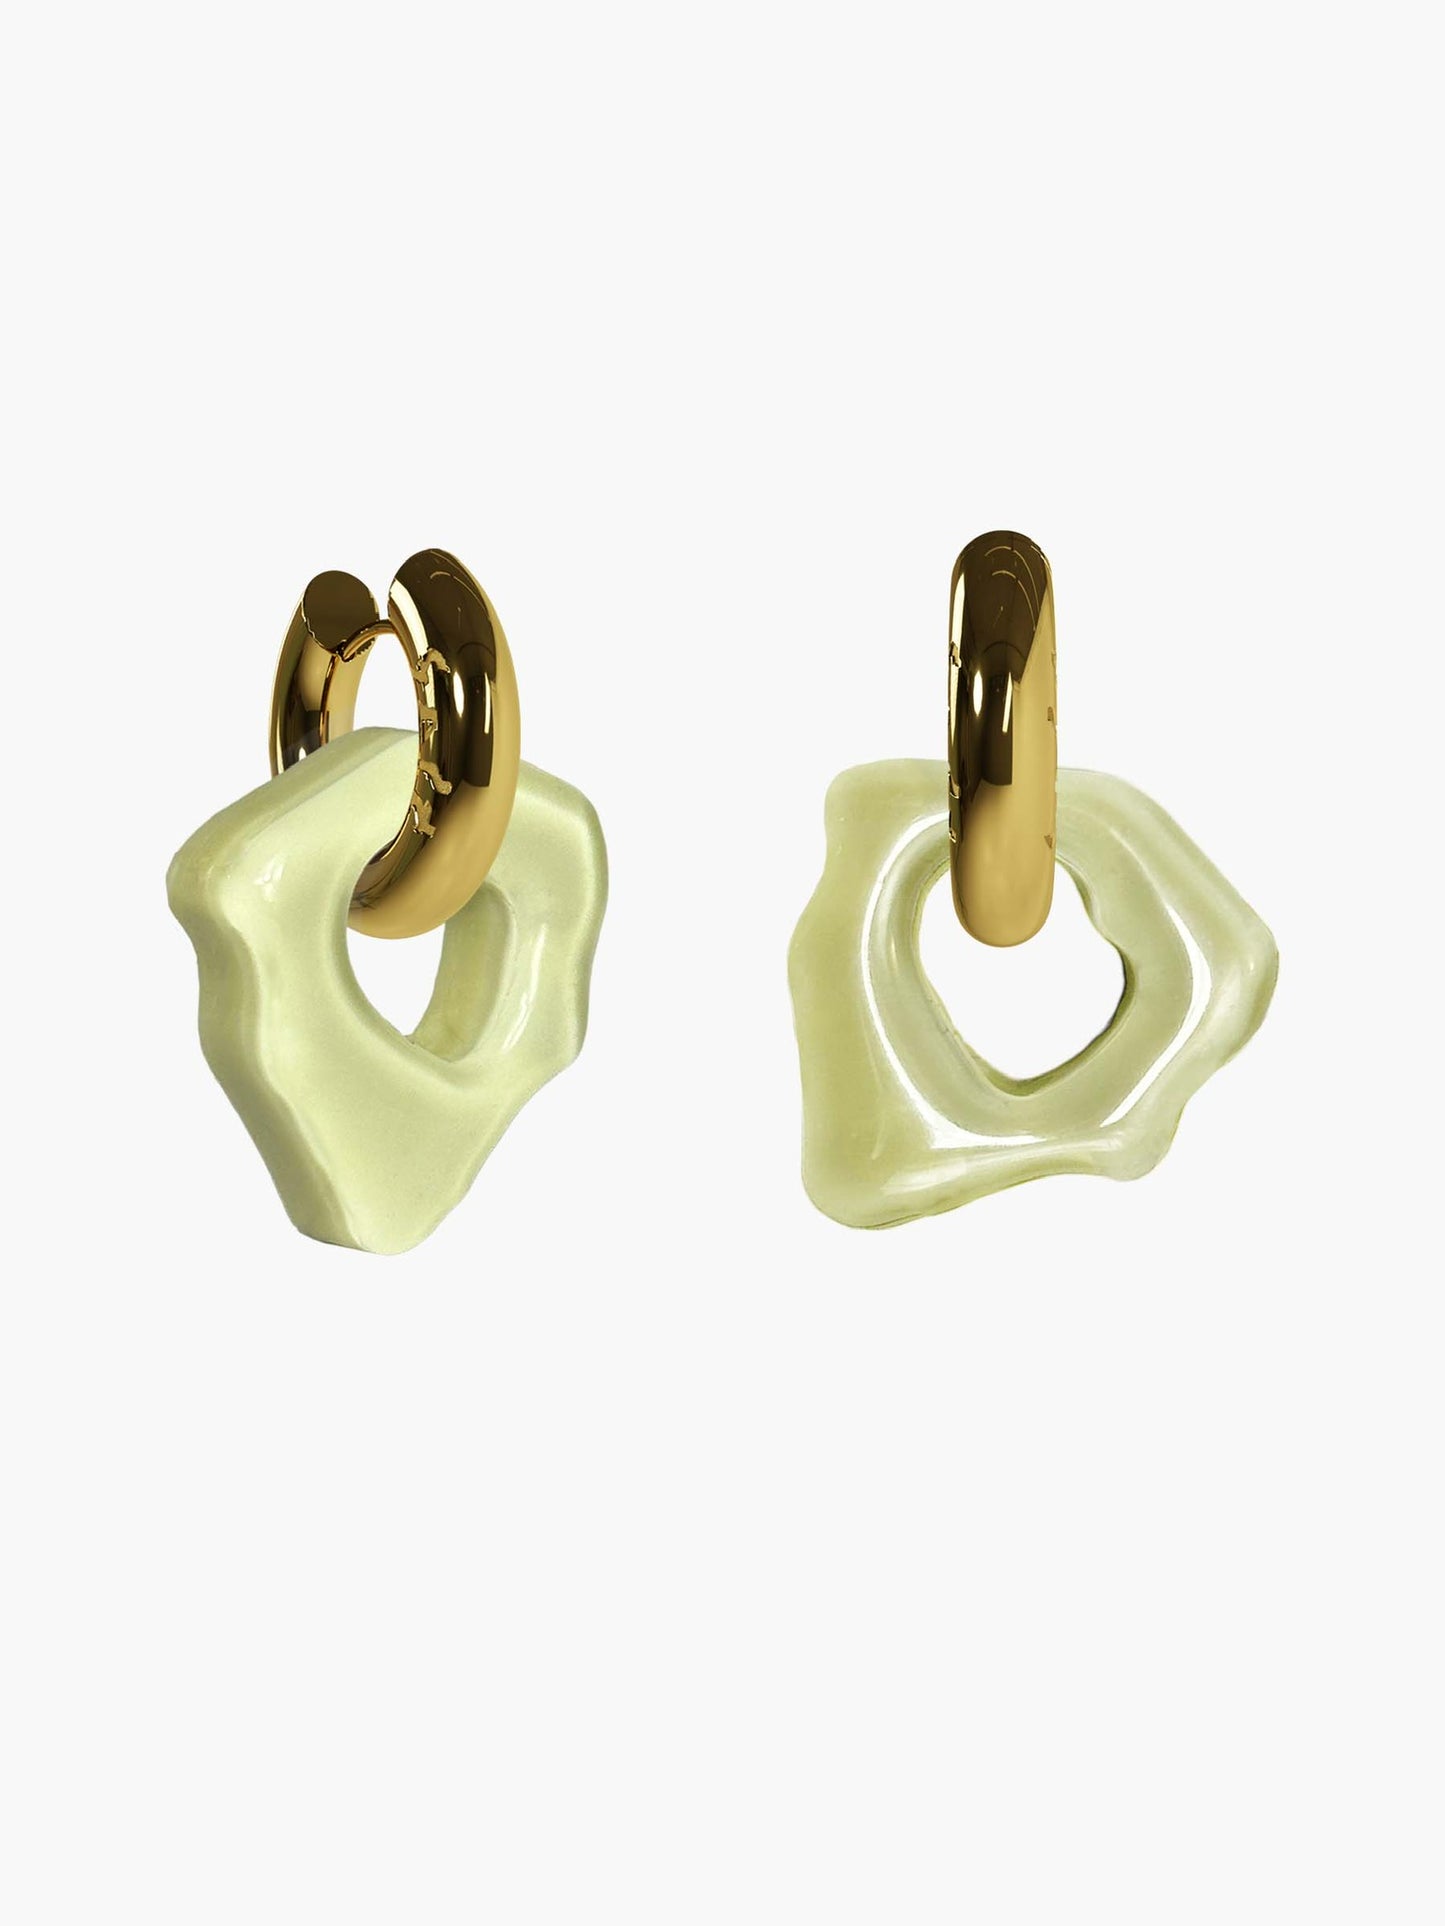 Ora sage gold earring (pair)